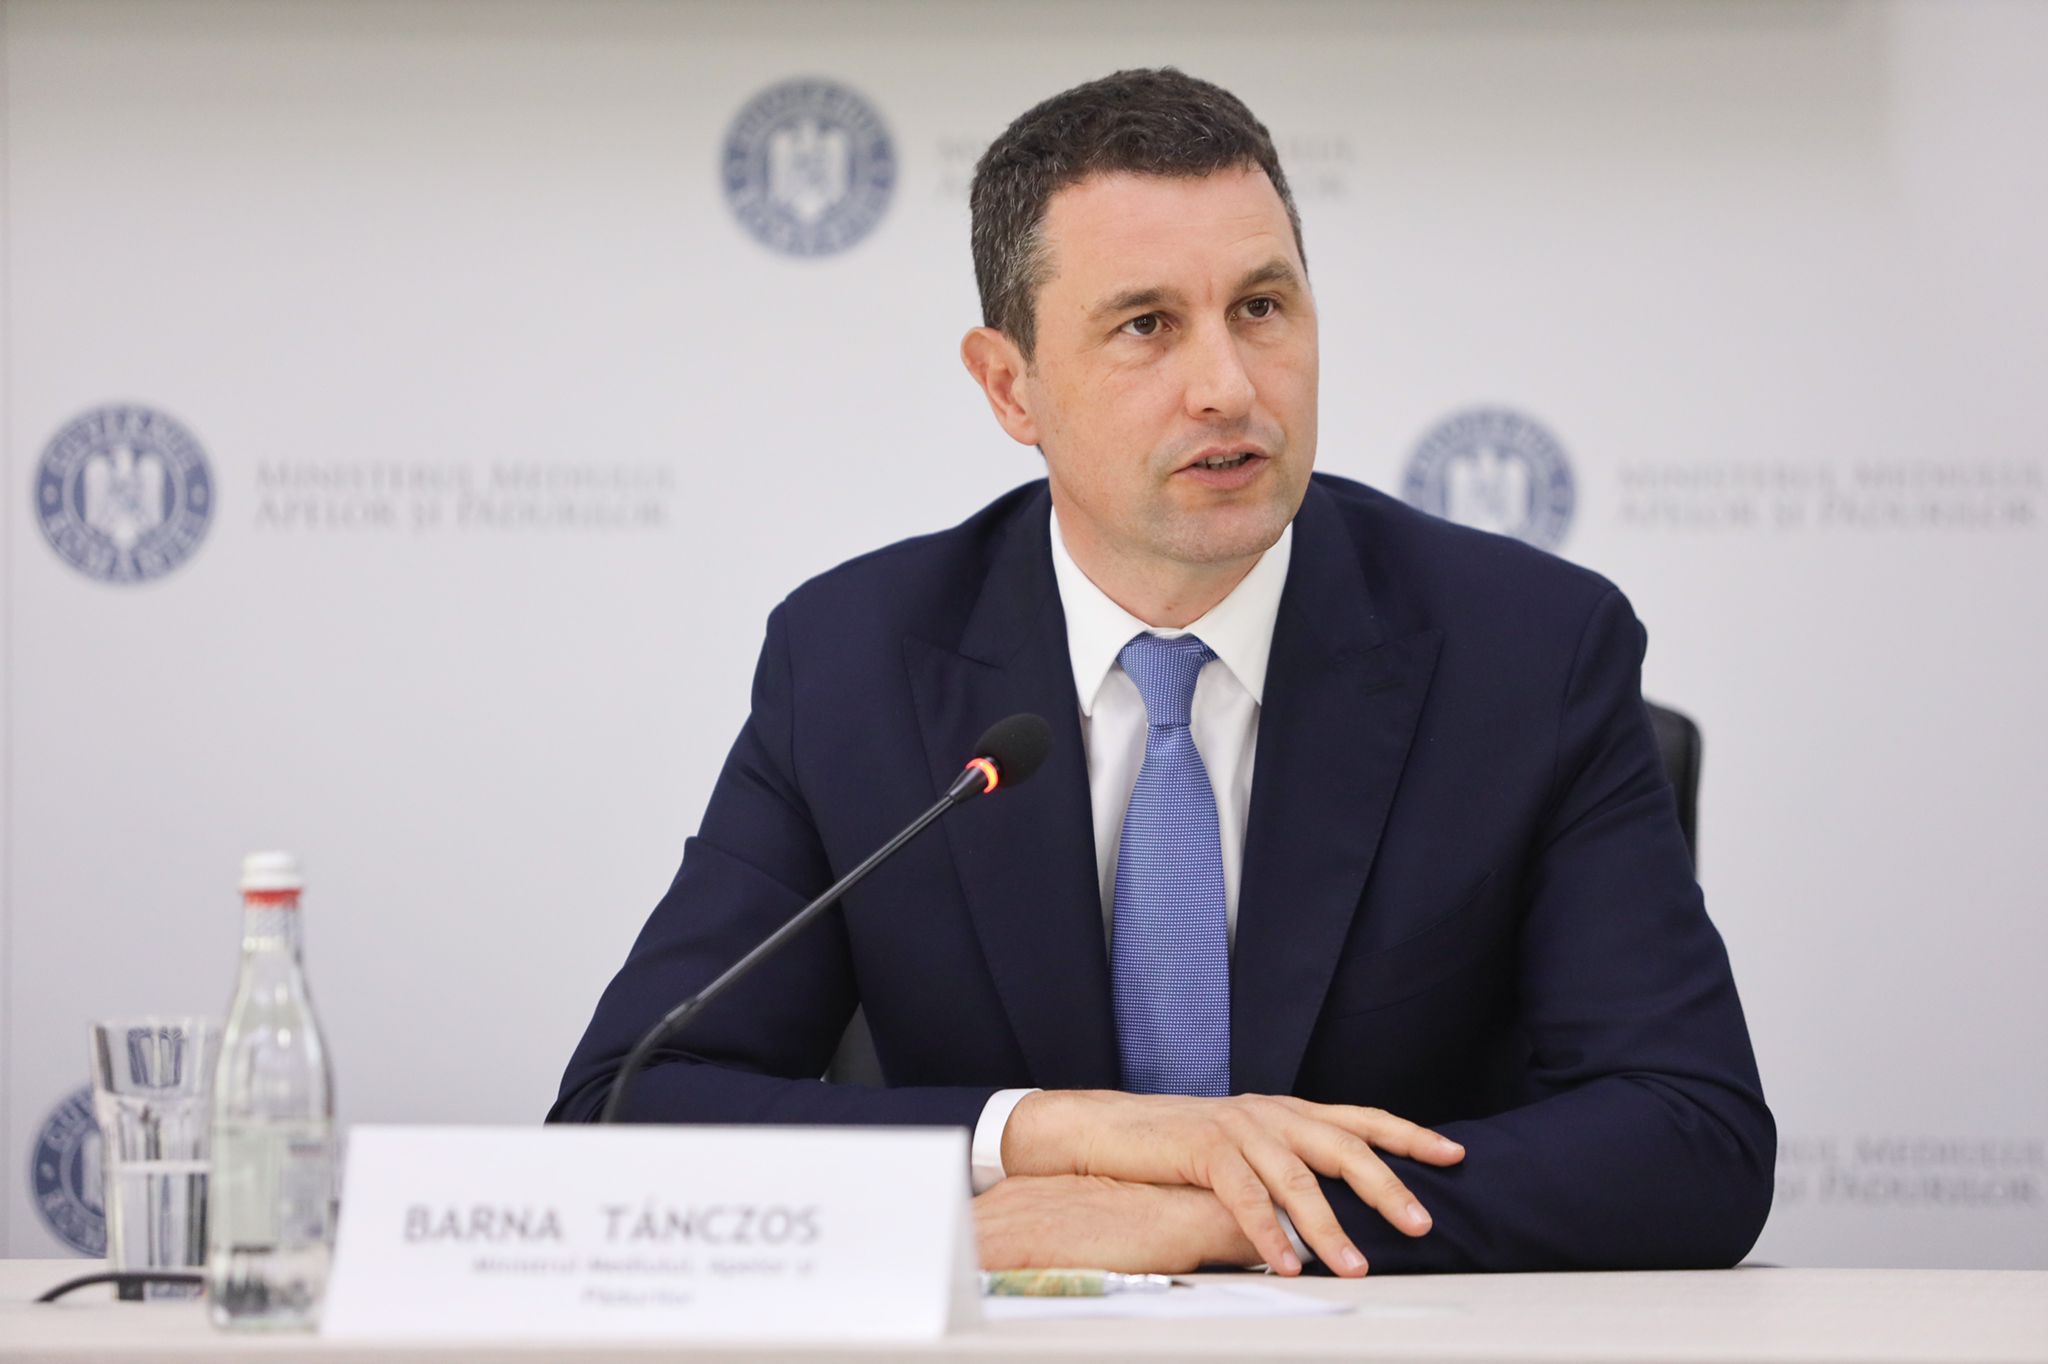 Tanczos Barna, ministrul Mediului: Administraţiile locale plătesc amenzi de milioane de lei, pentru nerealizarea ţintelor de colectare, din buzunarul fiecărui cetăţean